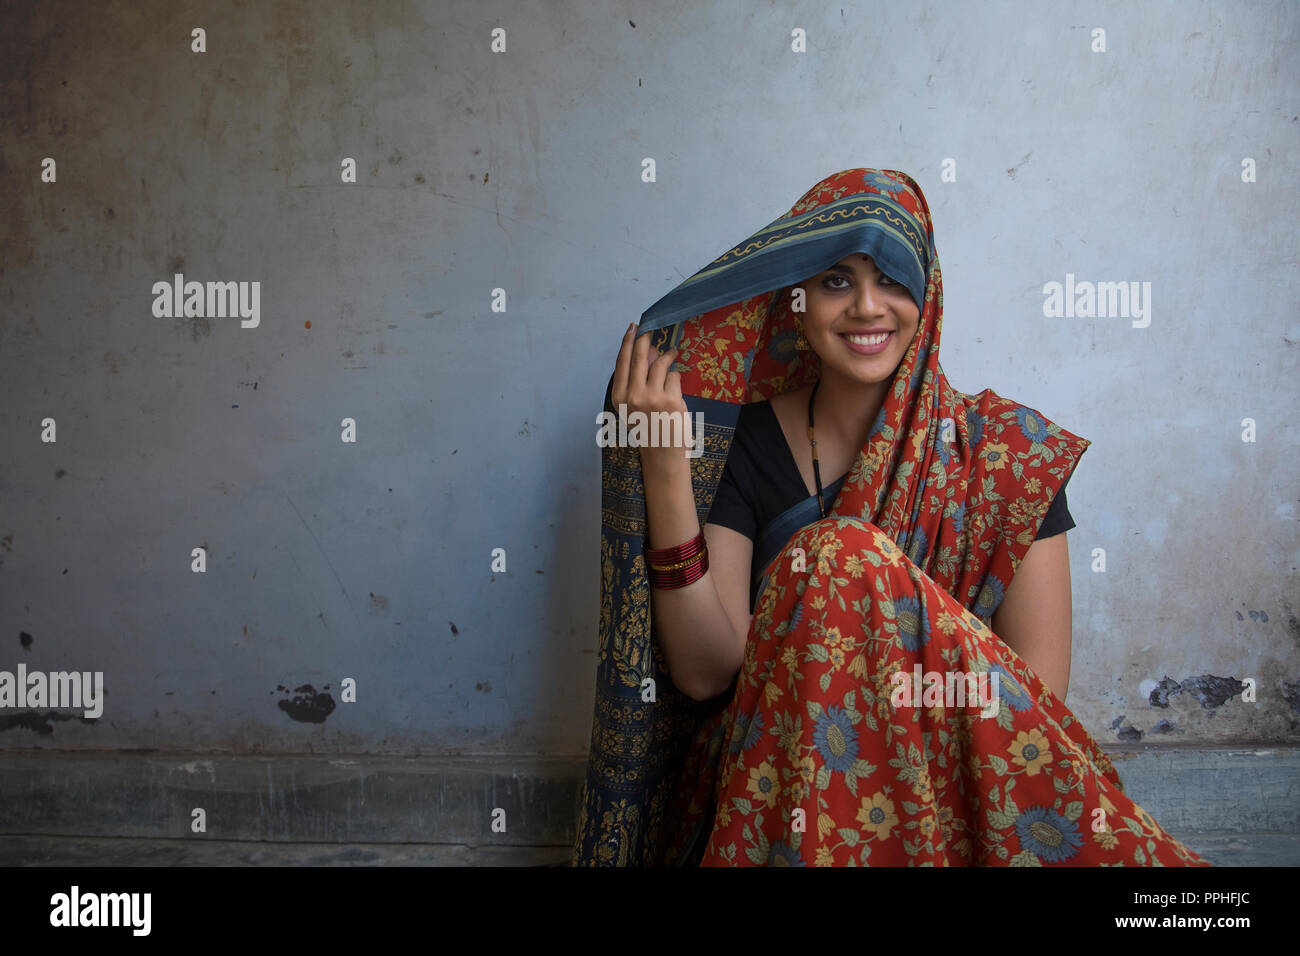 Nahaufnahme von einem schönen Lächeln Frau auf dem Boden sitzend, die ihren Kopf mit Sari. Stockfoto